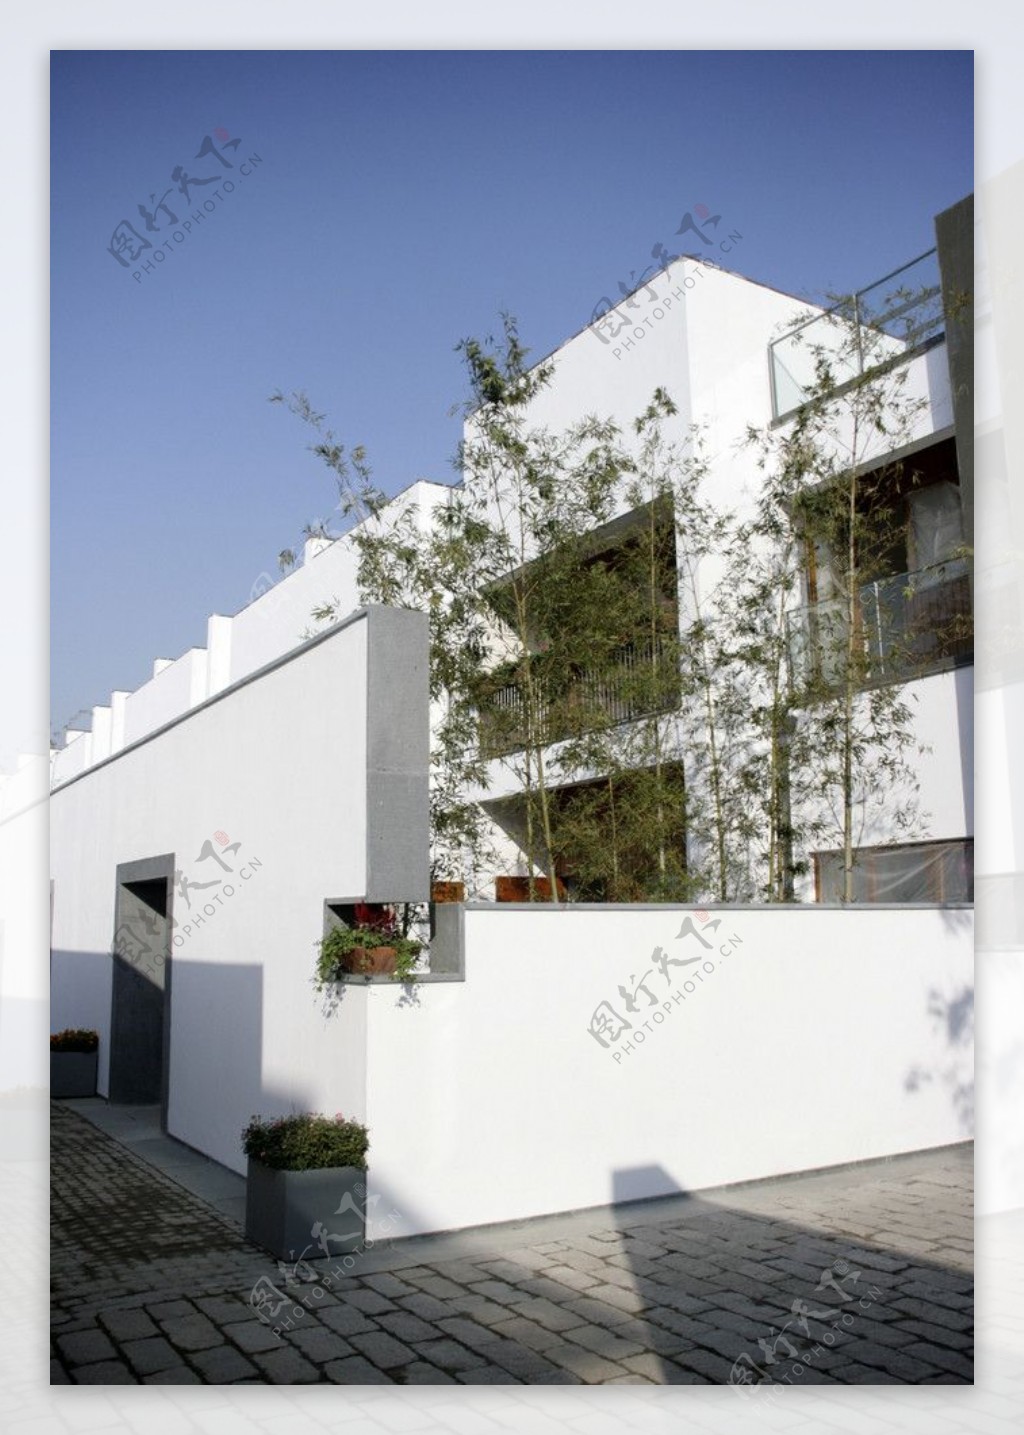 围墙古典雅韵现代楼盘庭院效果图片